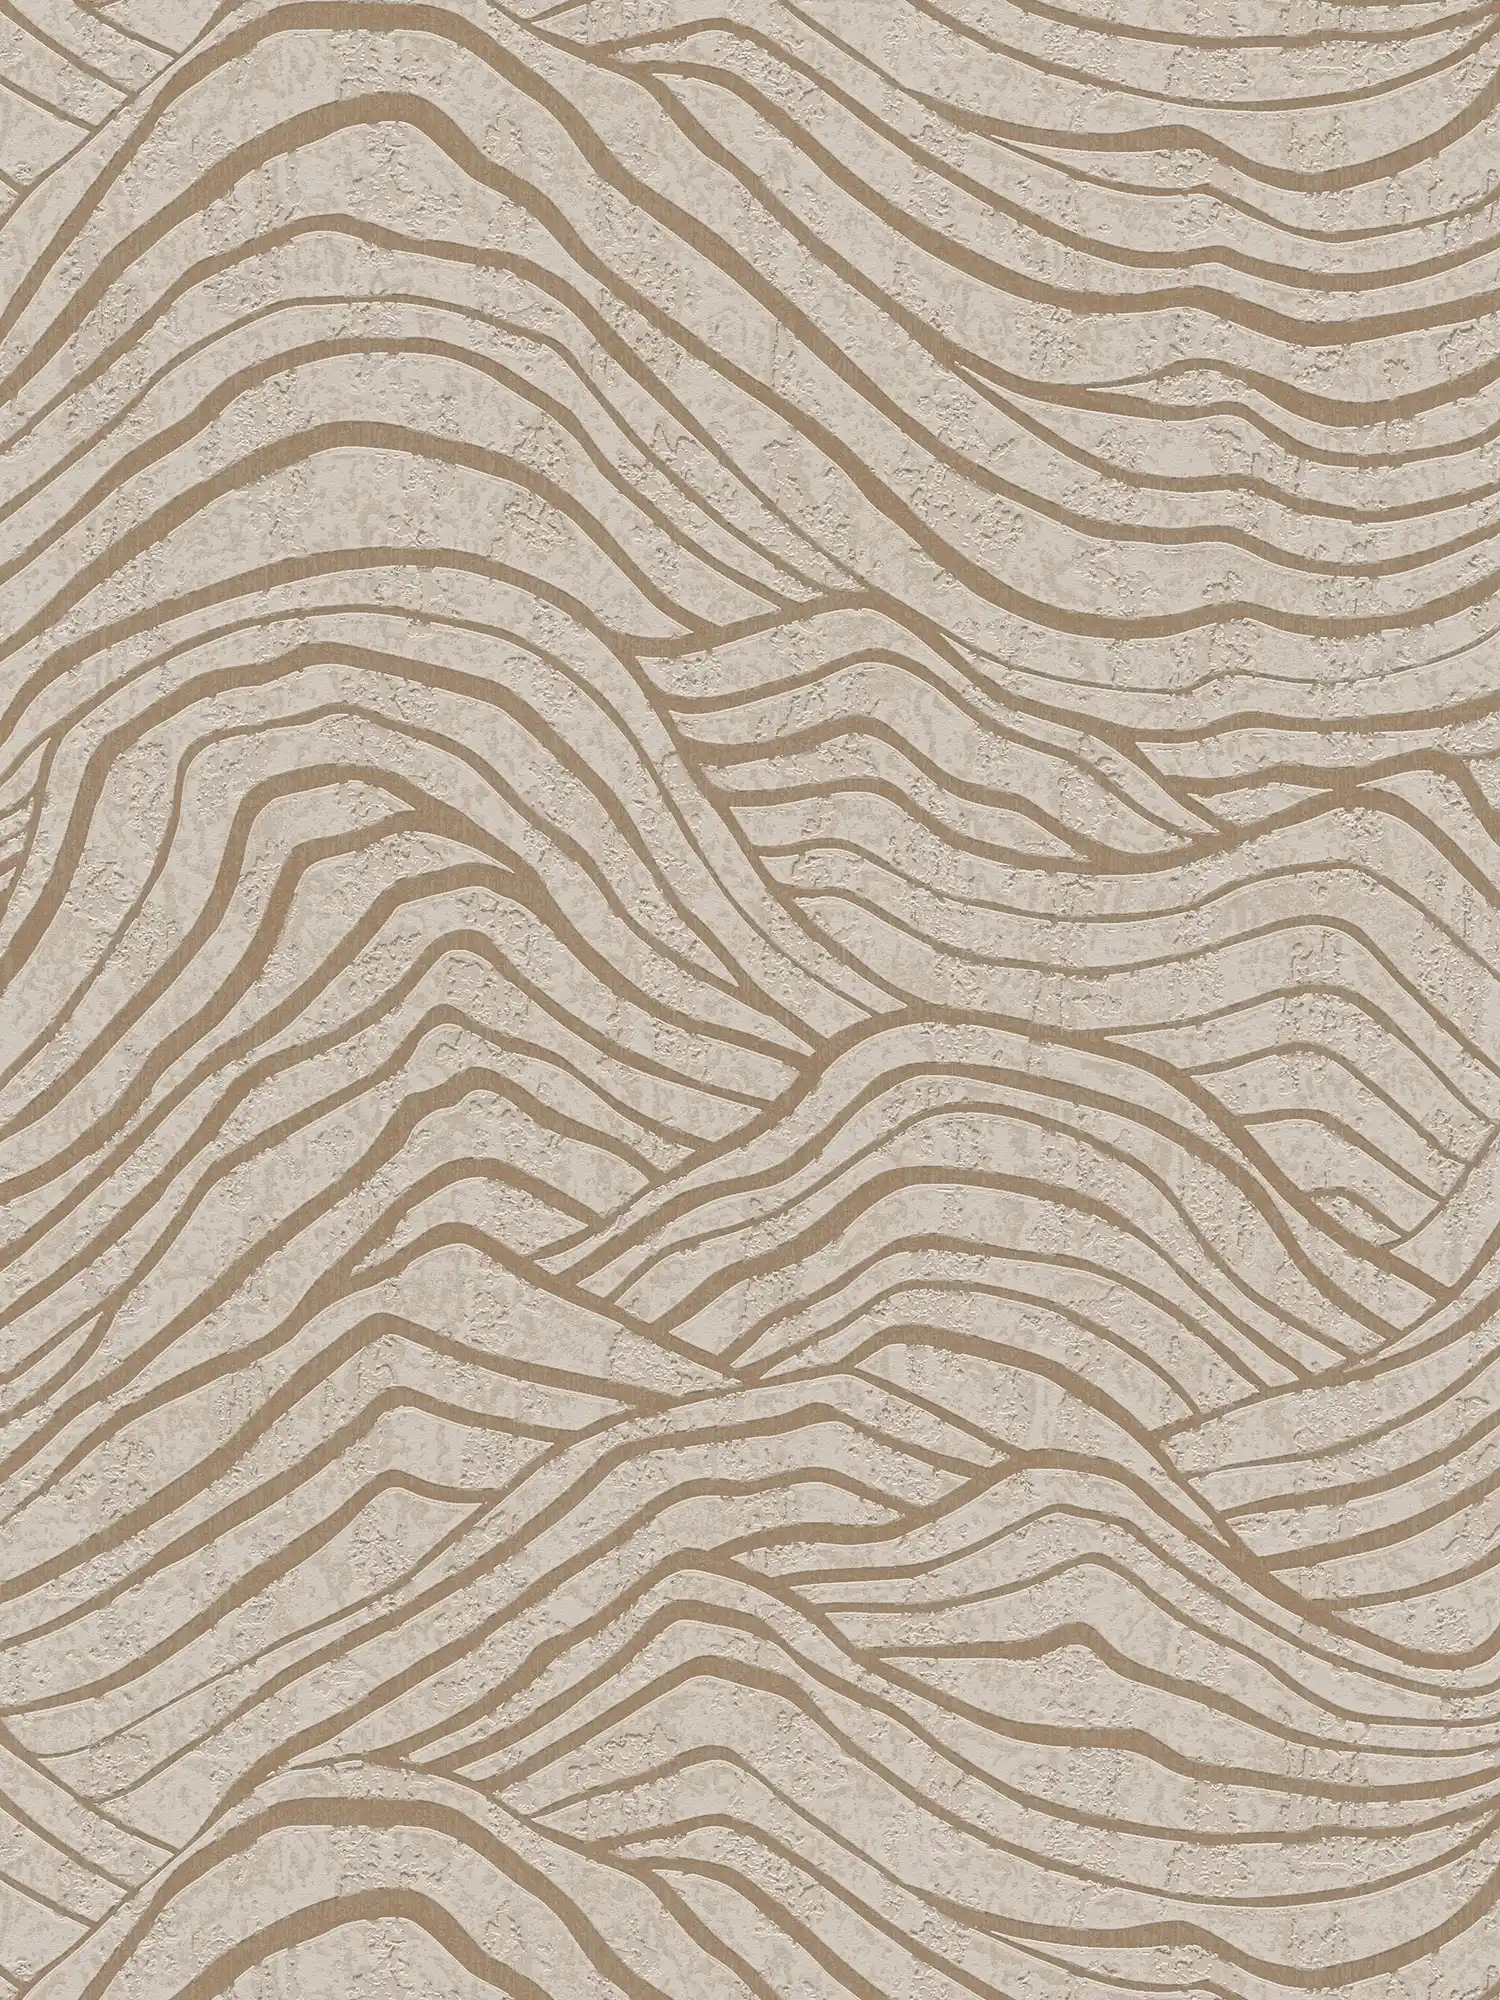         papier peint en papier avec motif de colline asiatique - beige, or, gris
    